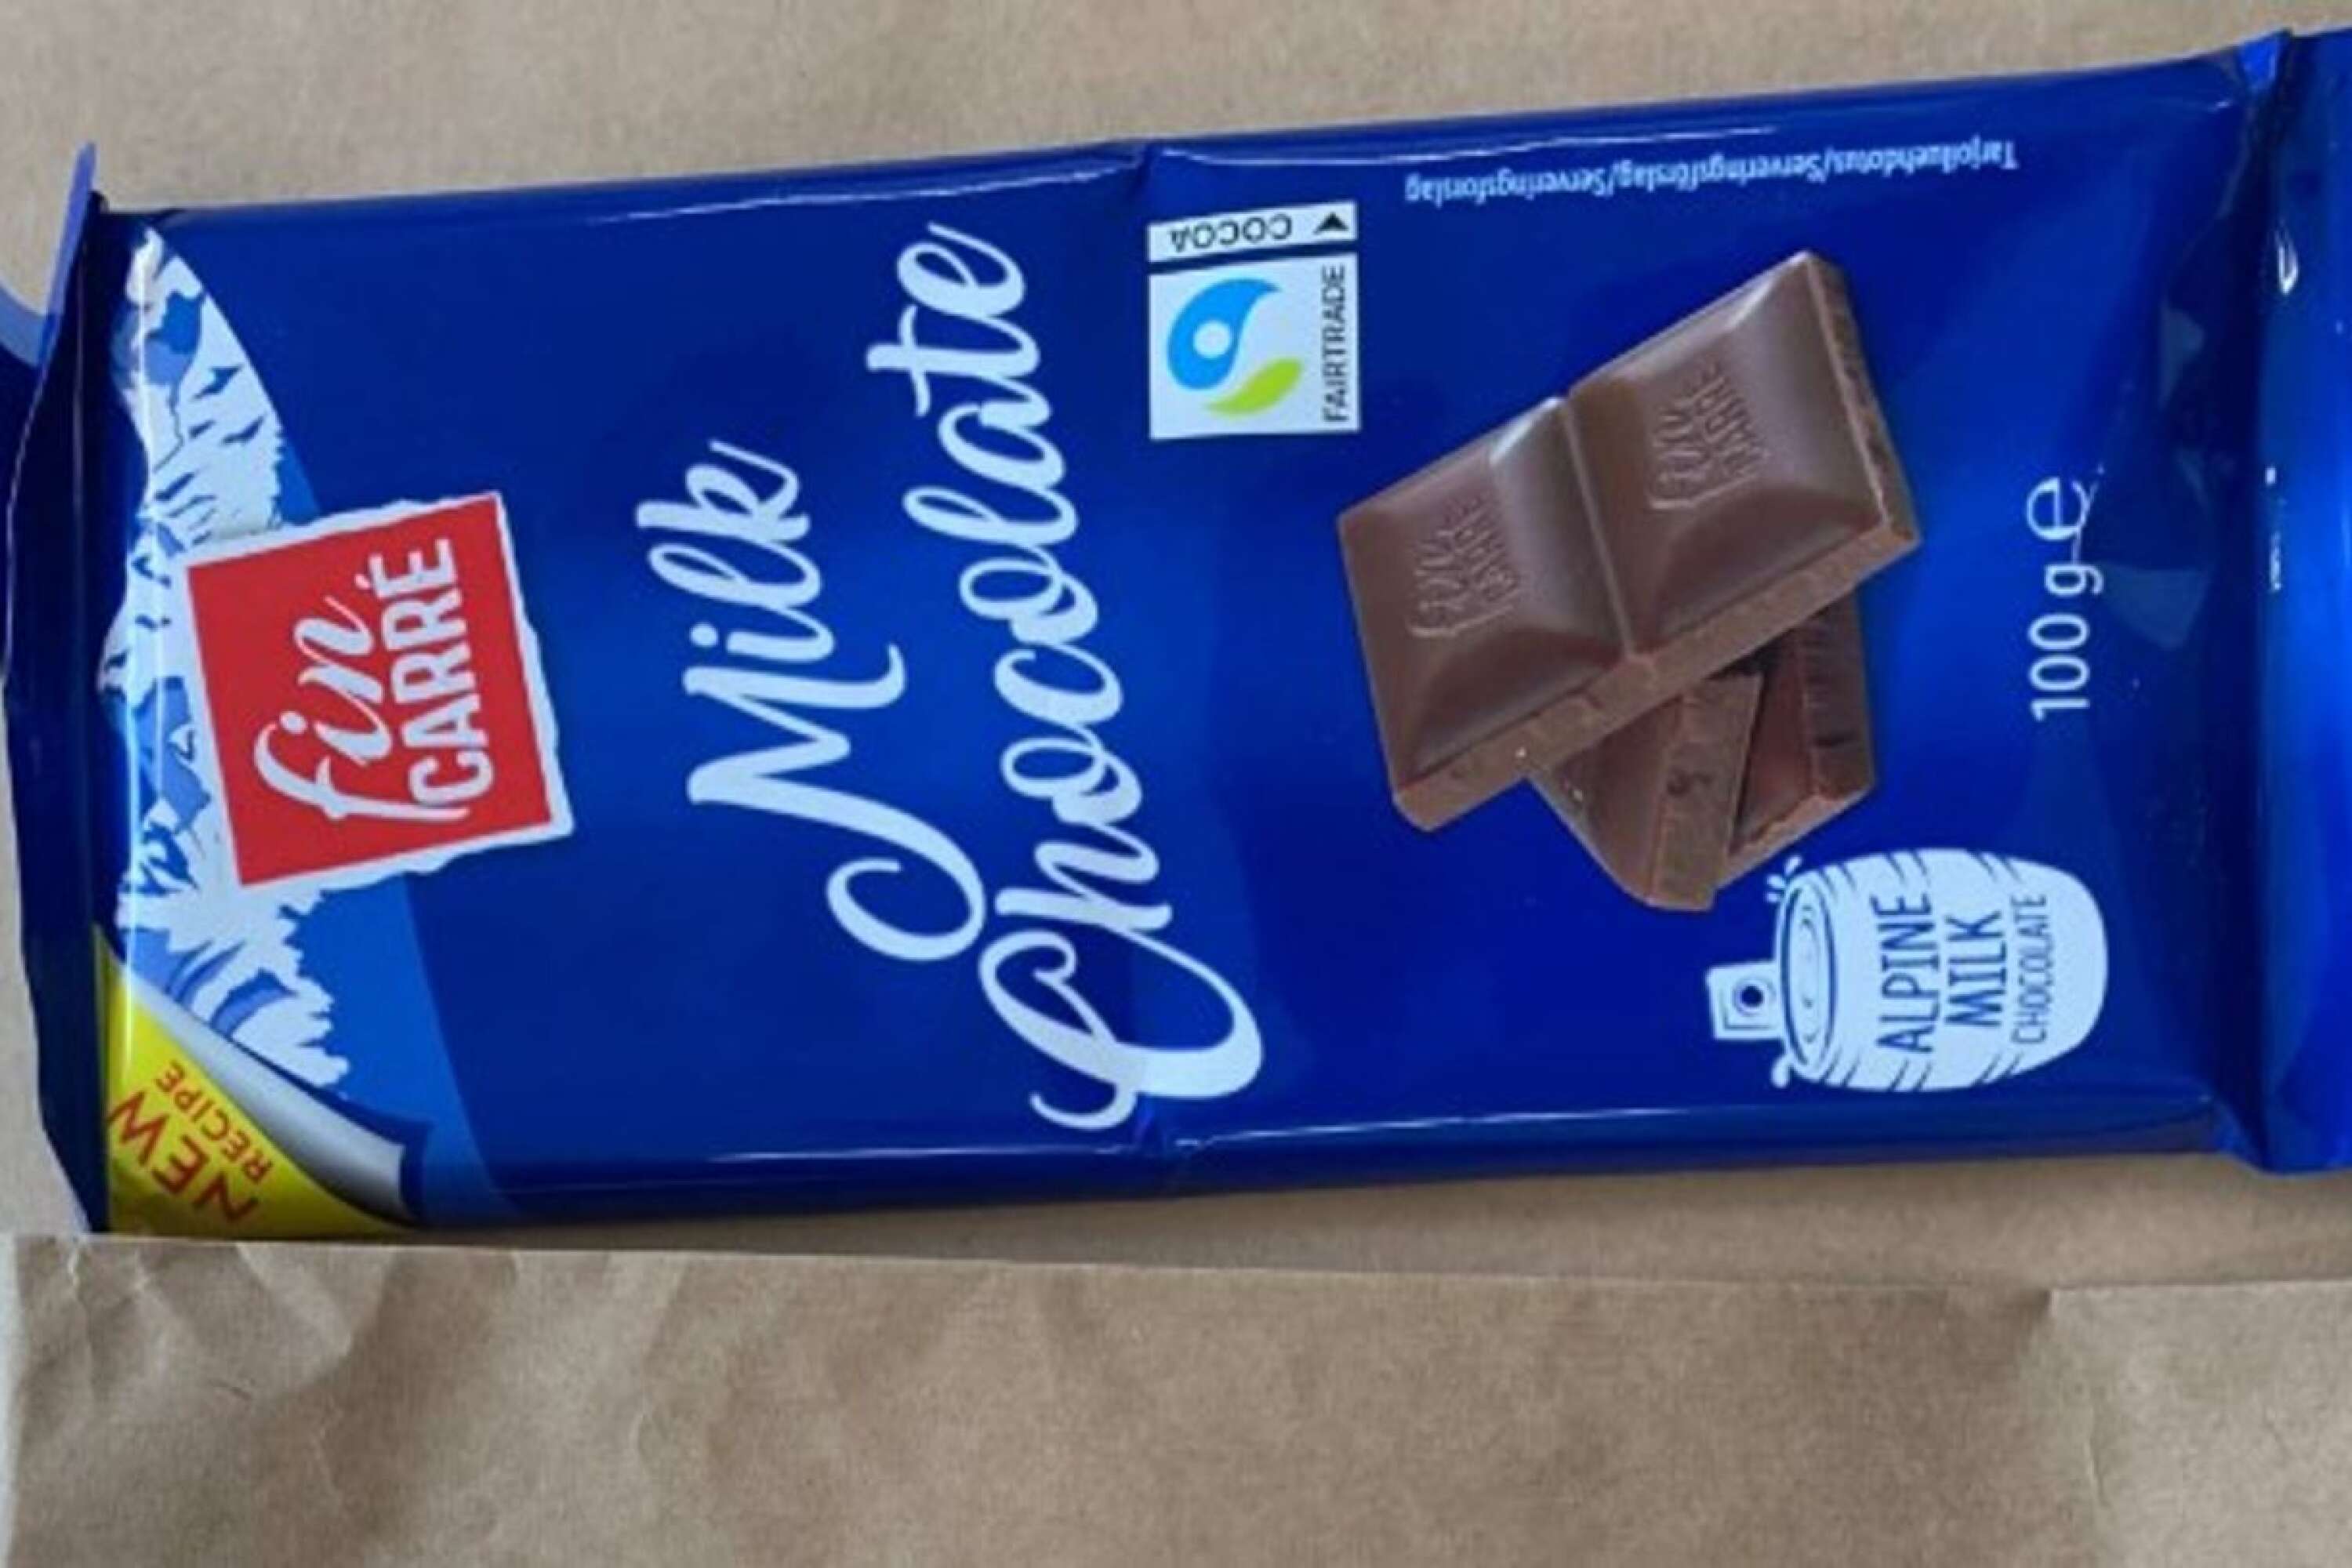 Chokladkakan som mannen påstås ha försökt locka barnen med.